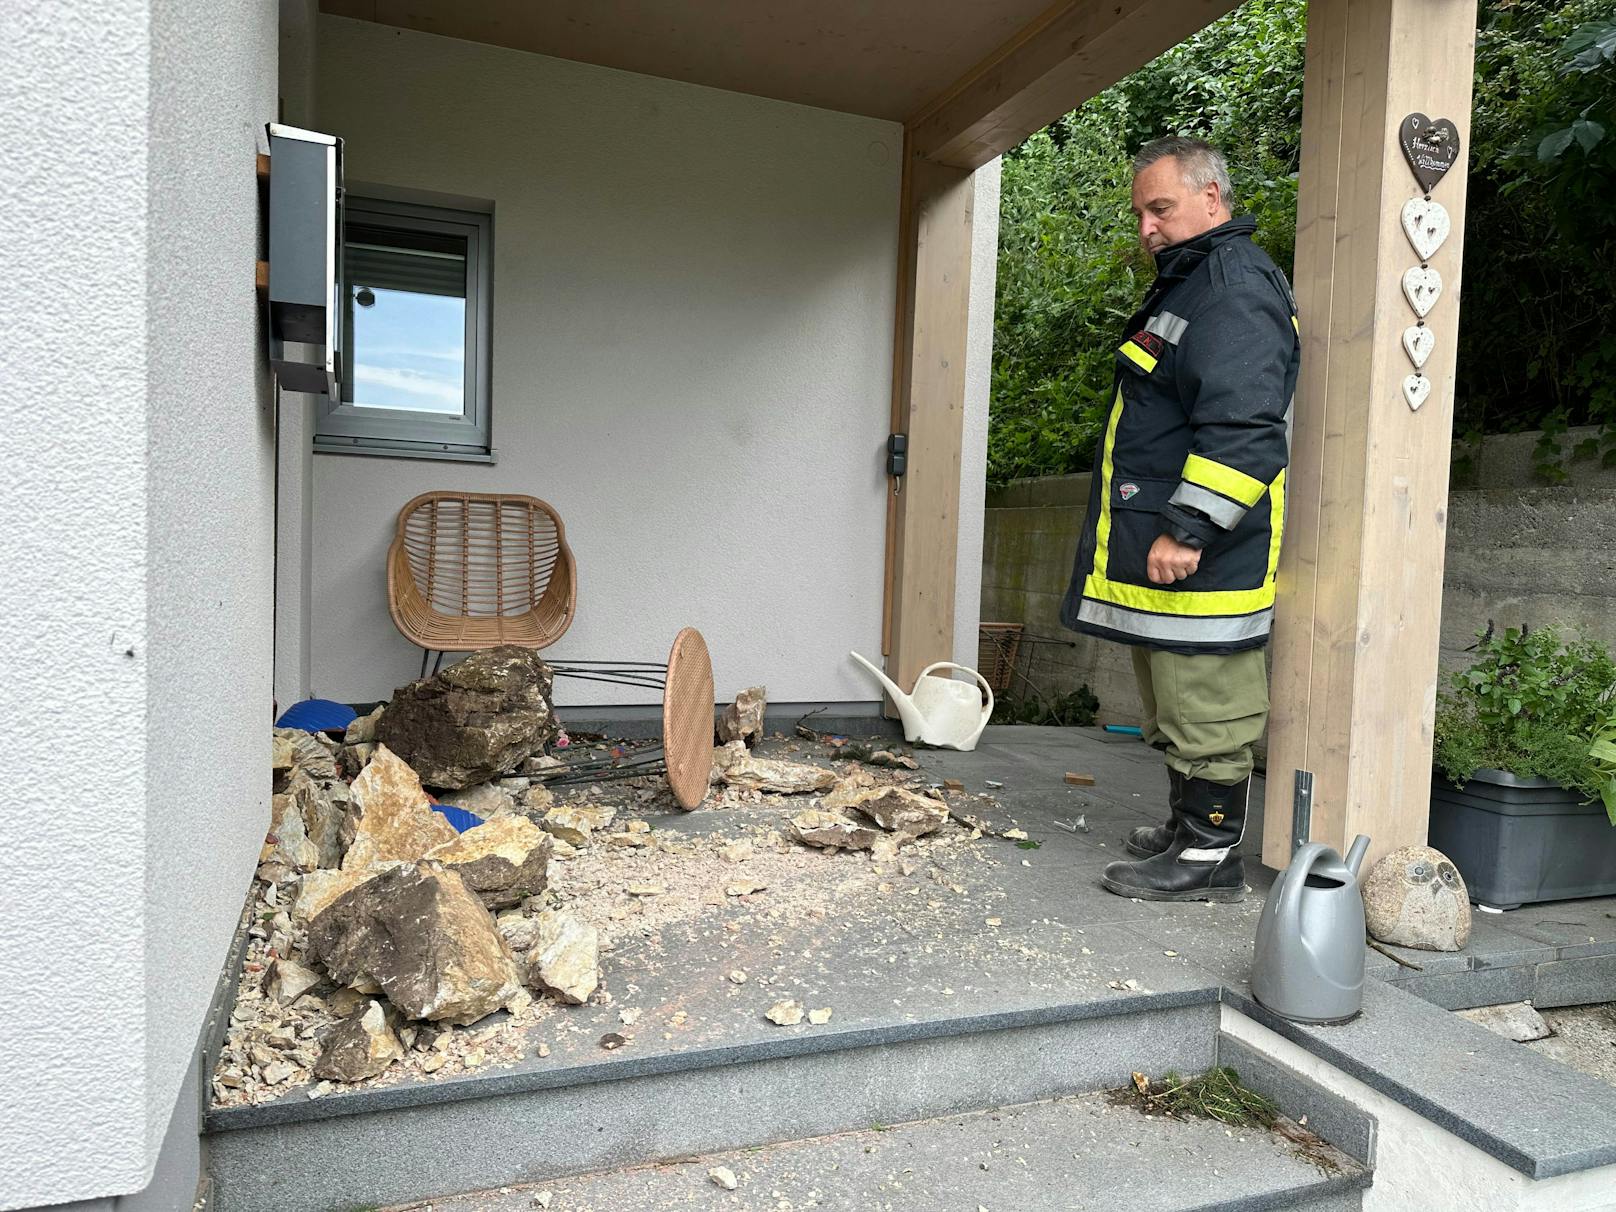 Am Mittwoch kam es gegen 01:00 Uhr im Zuge des Unwetters zu einem Felssturz in  Reith im Alpbachtal. Dabei wurde ein Gebäude von mehreren Felsbrocken getroffen und beschädigt.